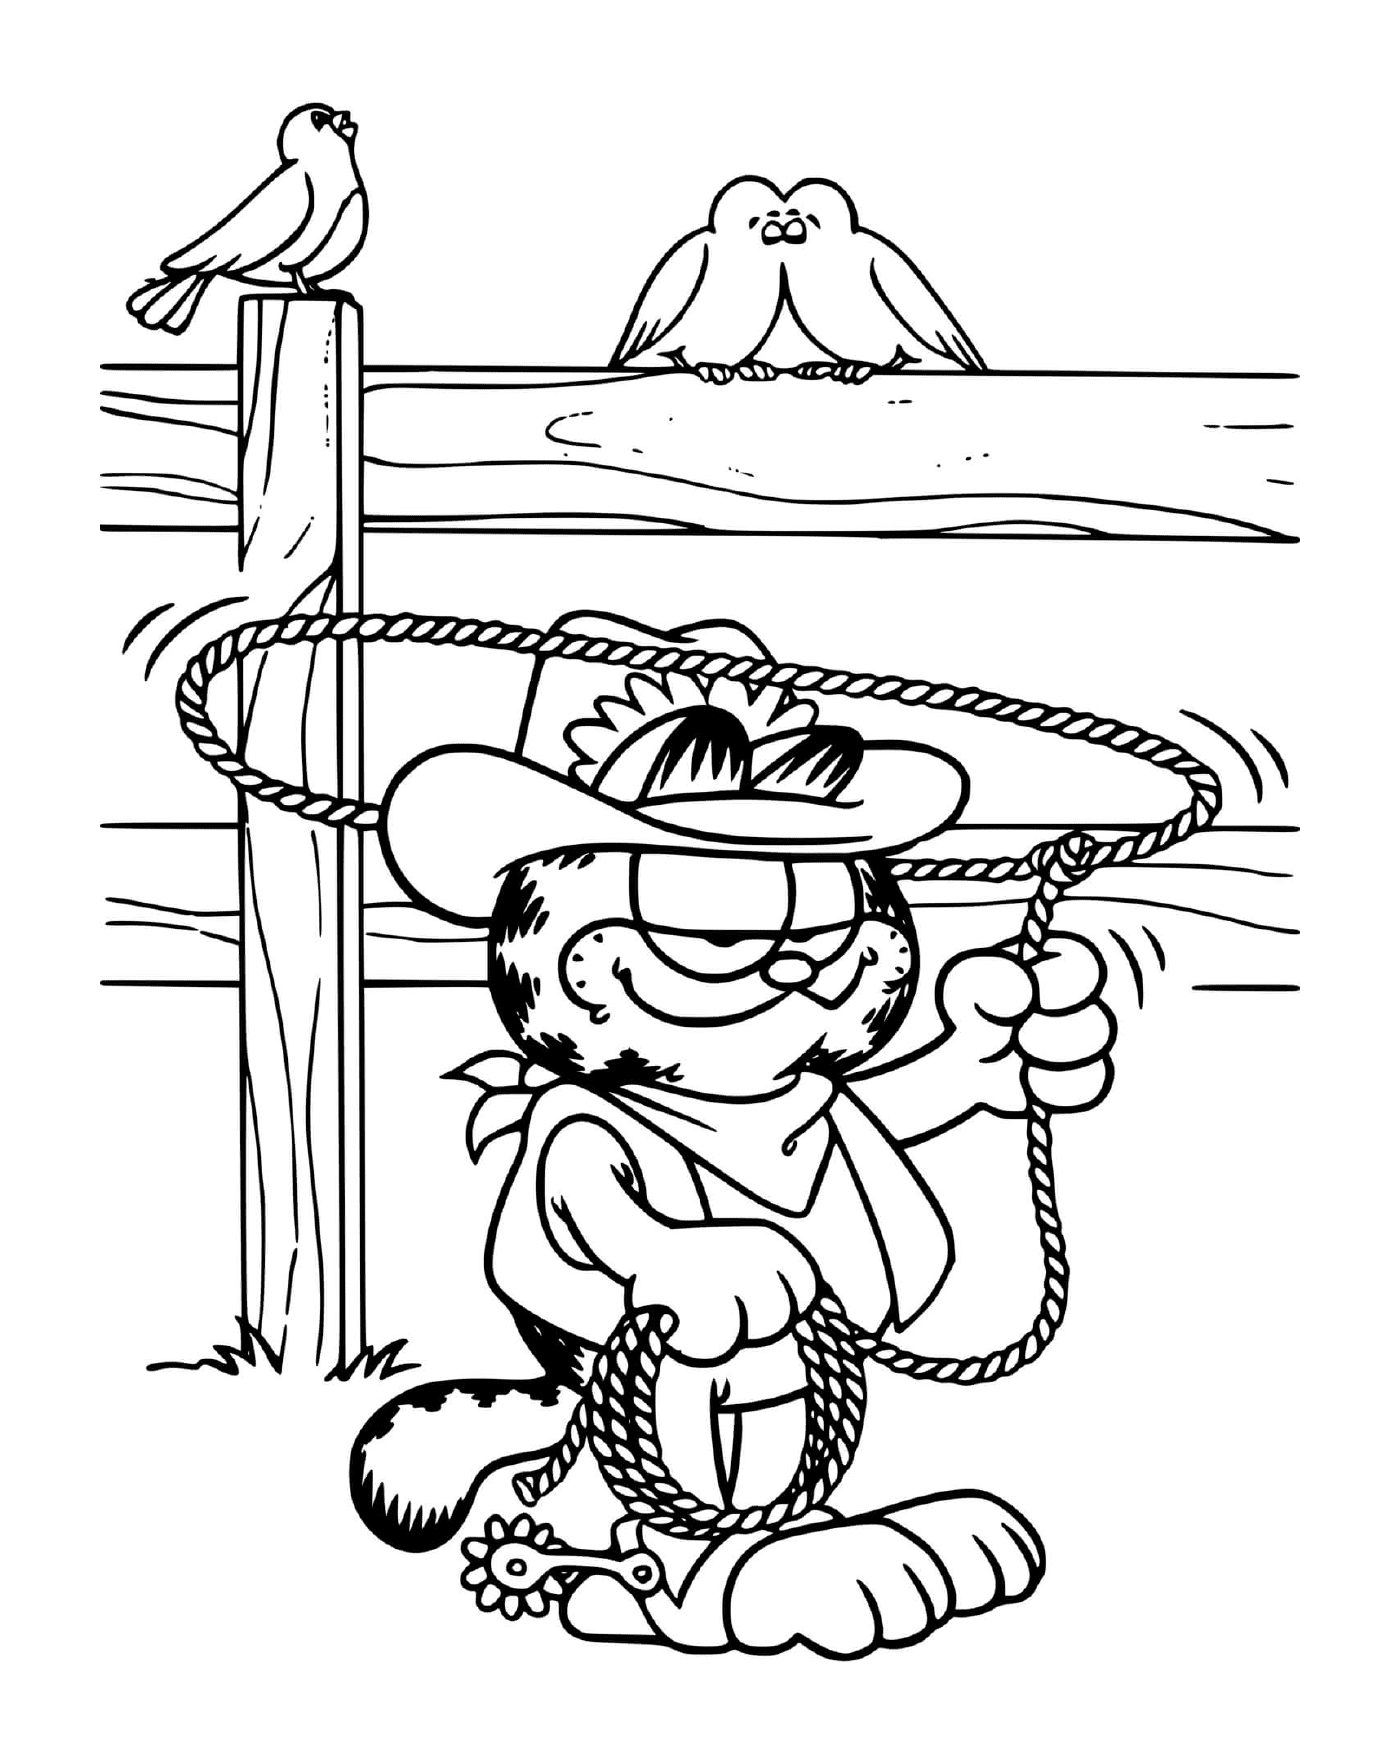   Garfield en cowboy avec son lasso 